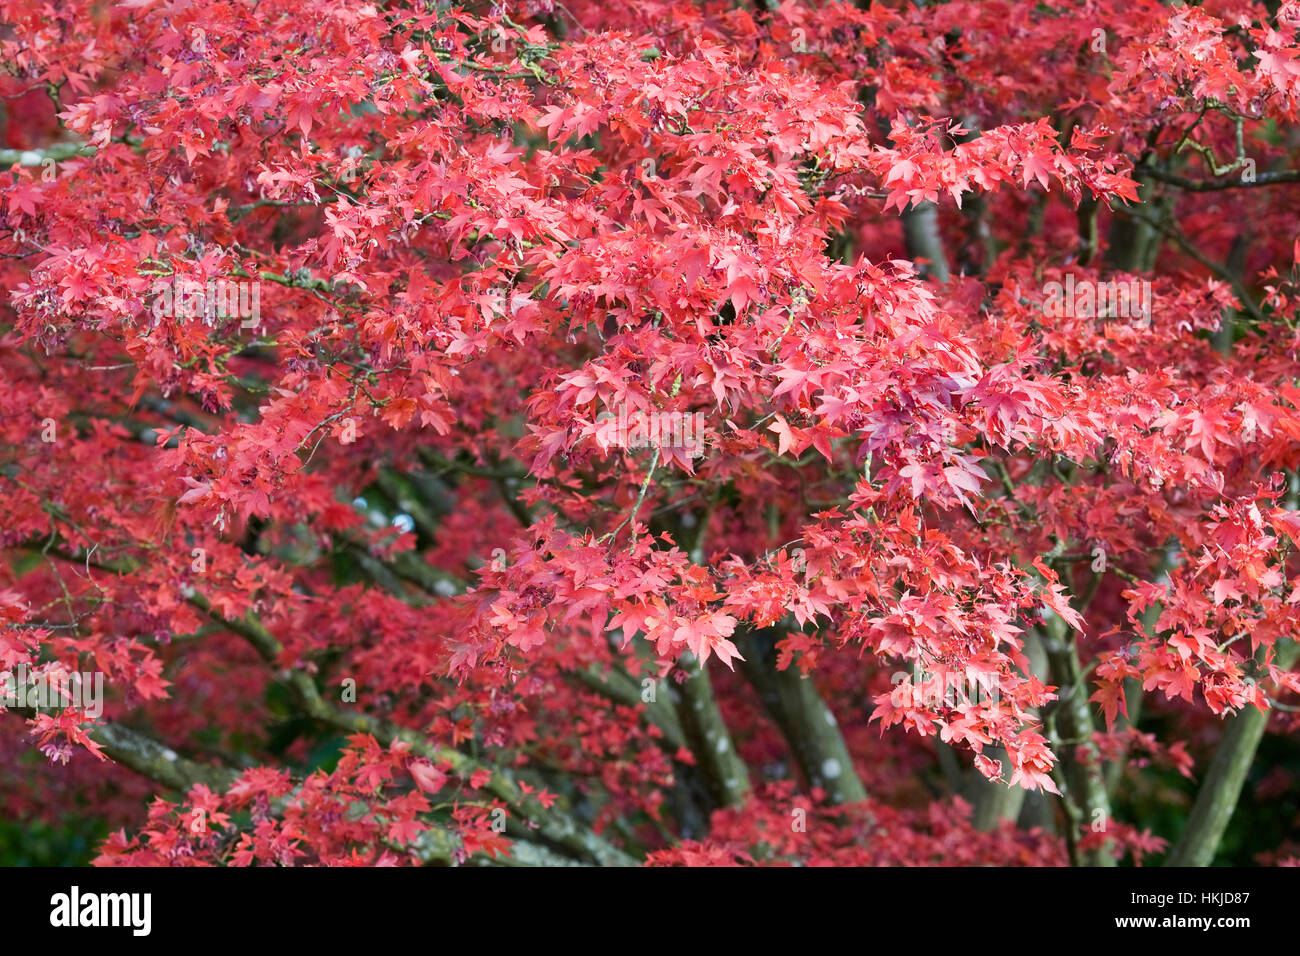 Acer palmatum Atropurpureum in Autumn. Stock Photo